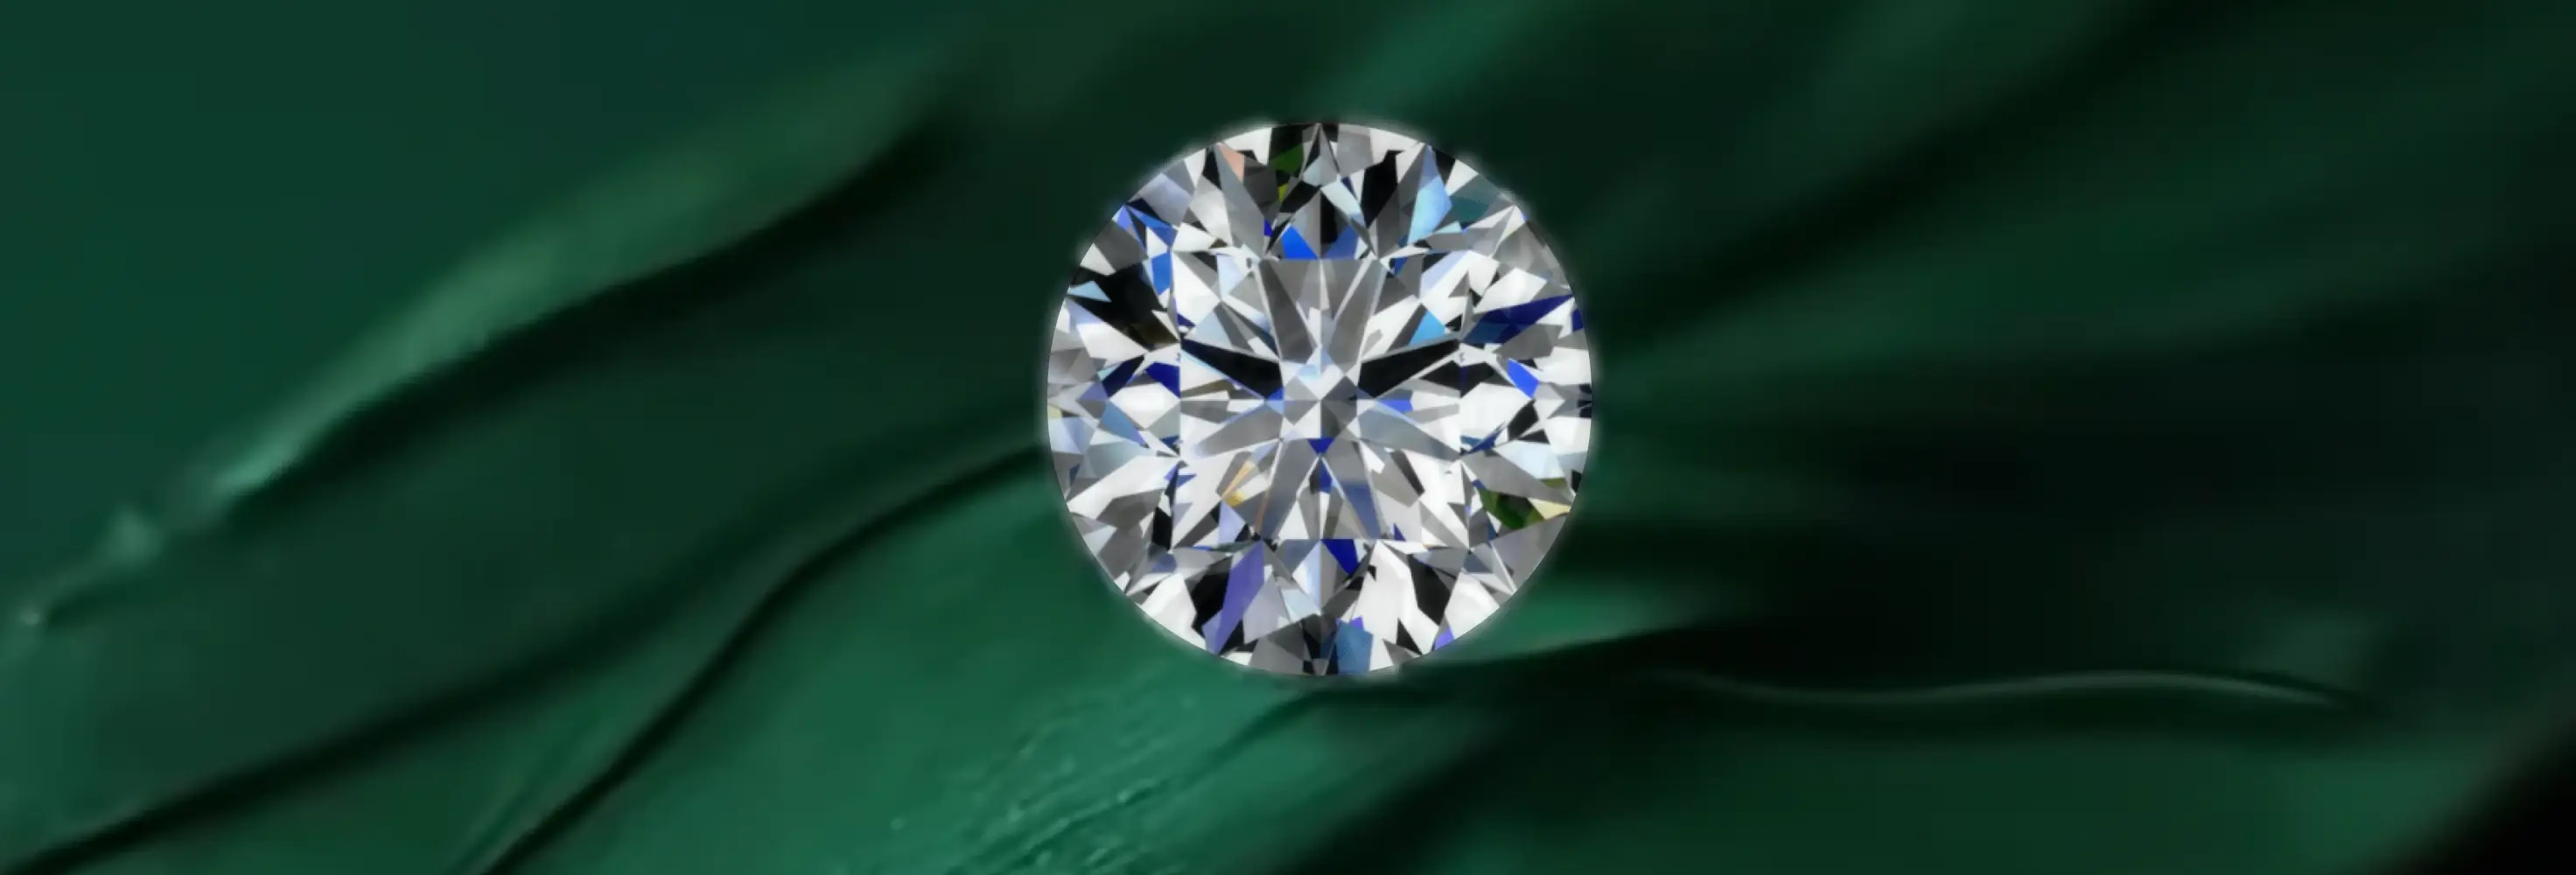 conflict free diamonds, ethical diamonds